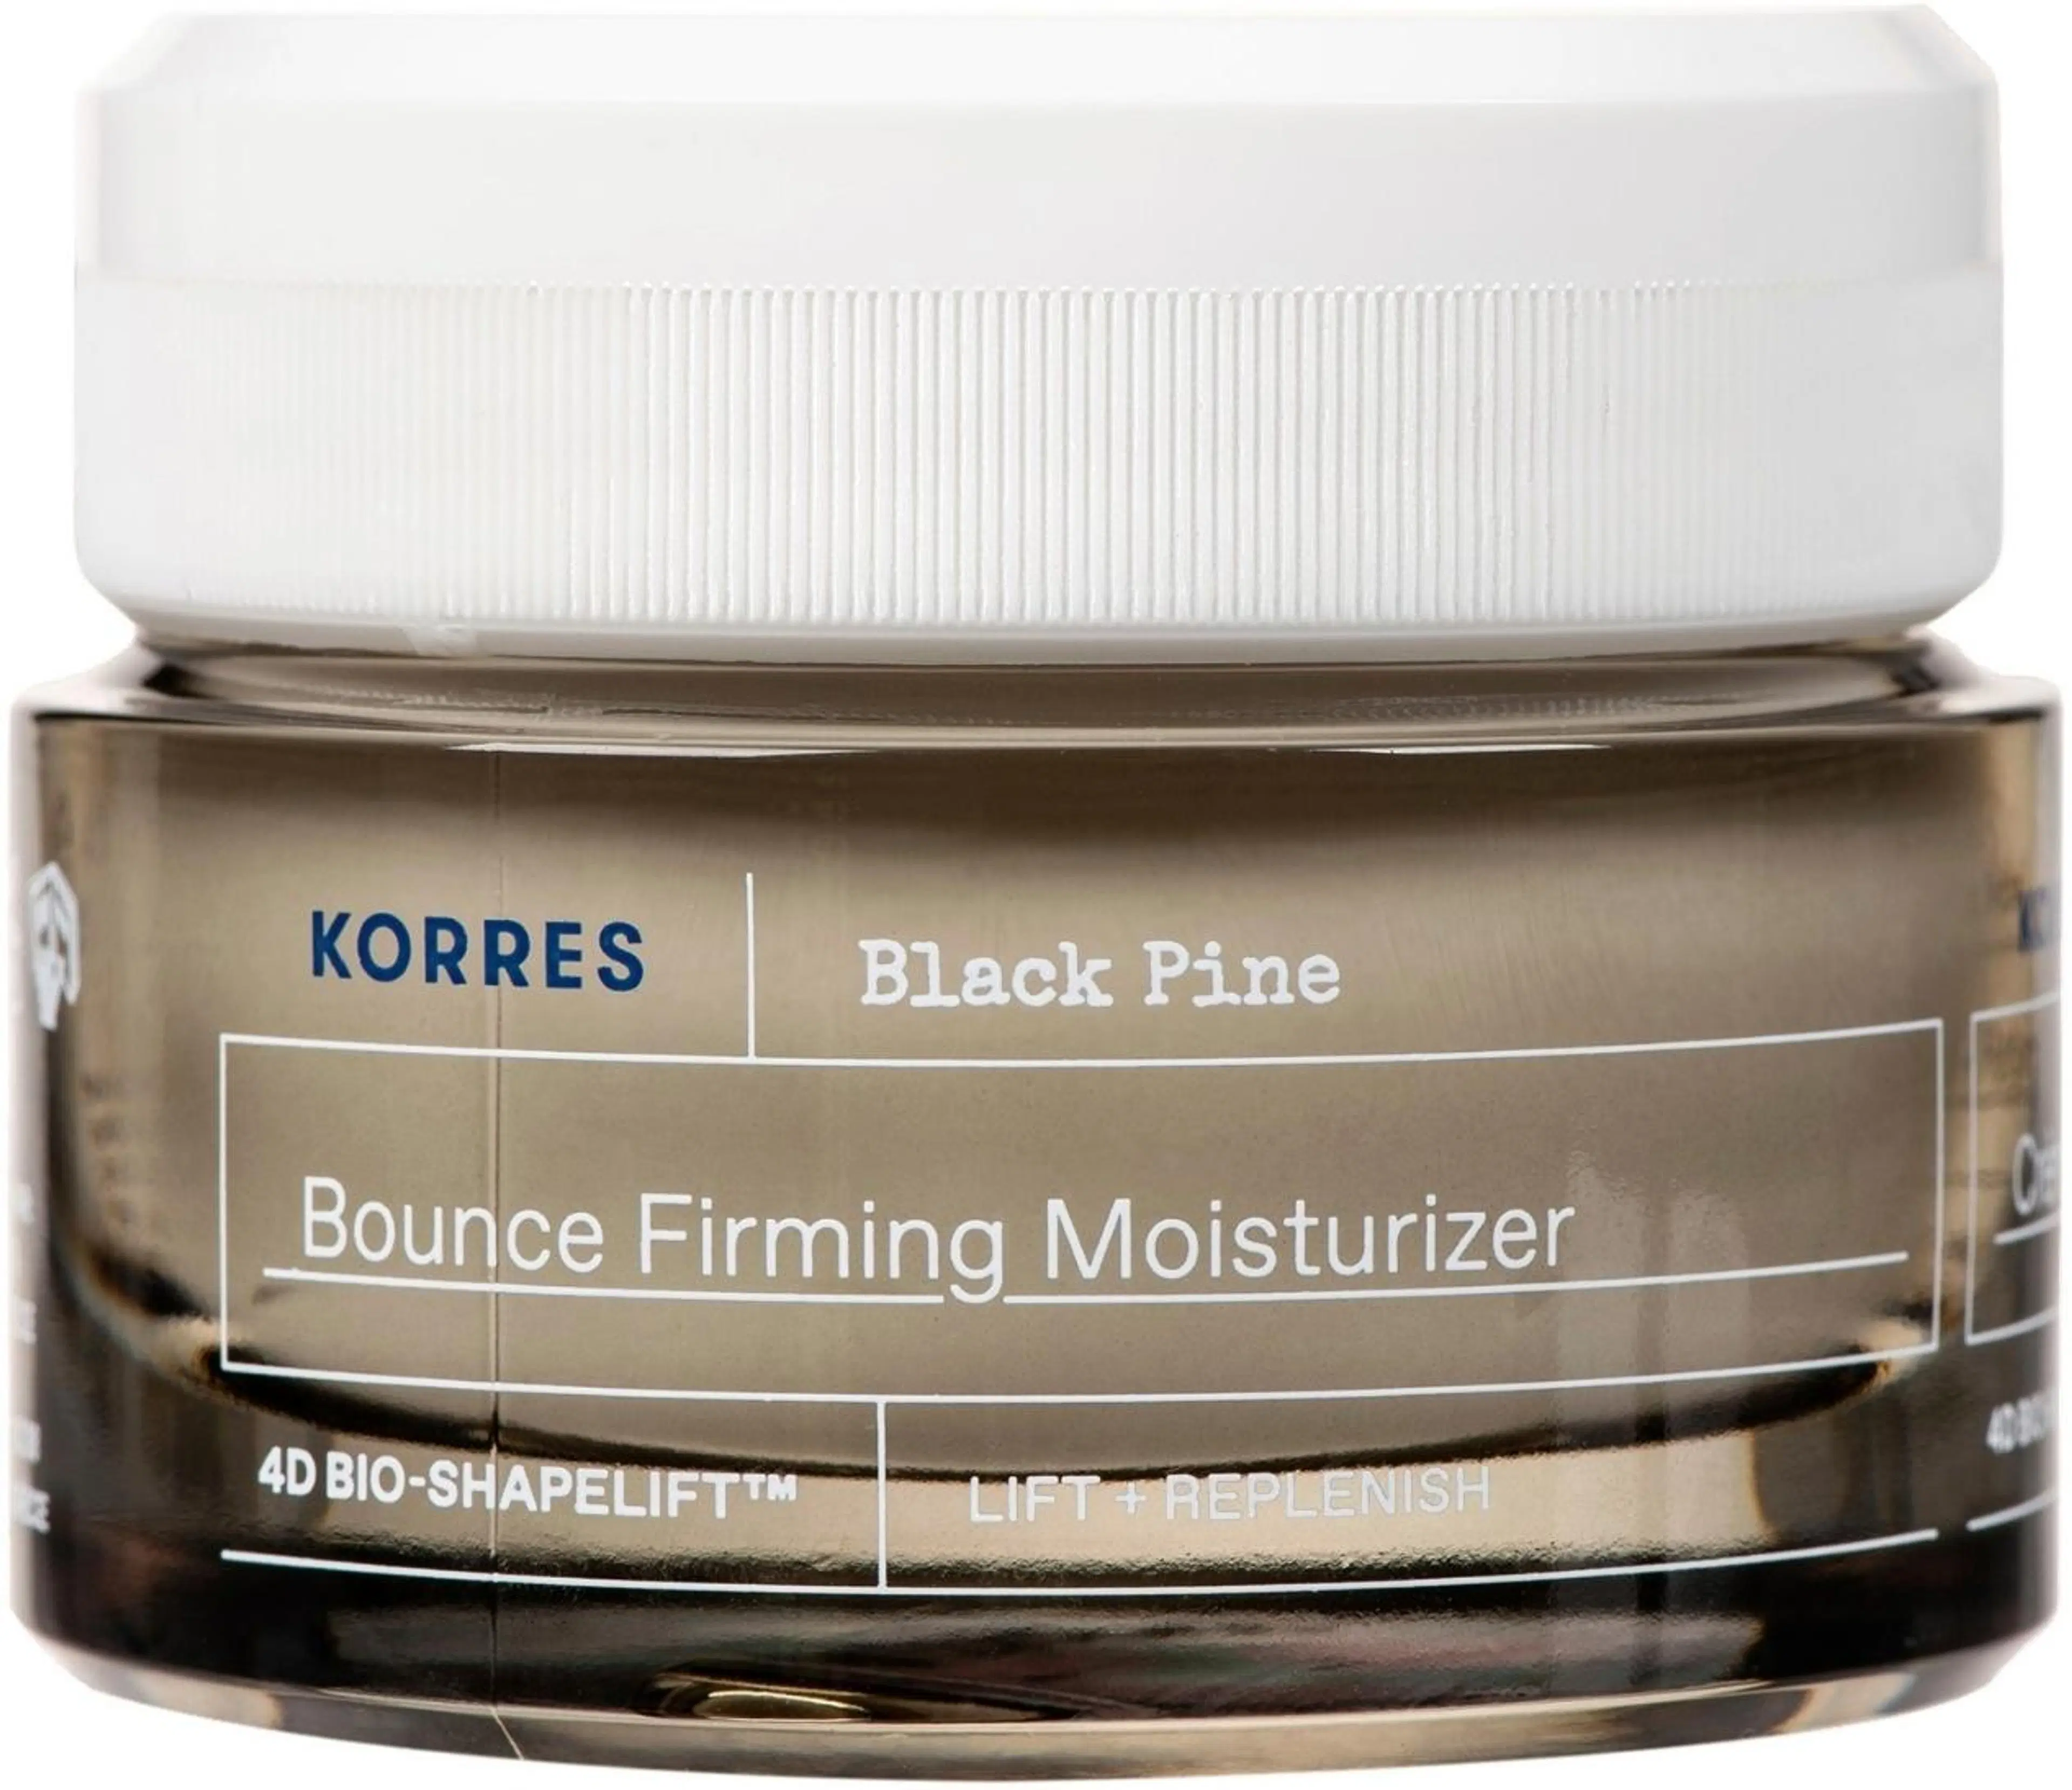 KORRES Black Pine 4D Bio-ShapeLift™ Bounce Firming Moisturiser  40 ml